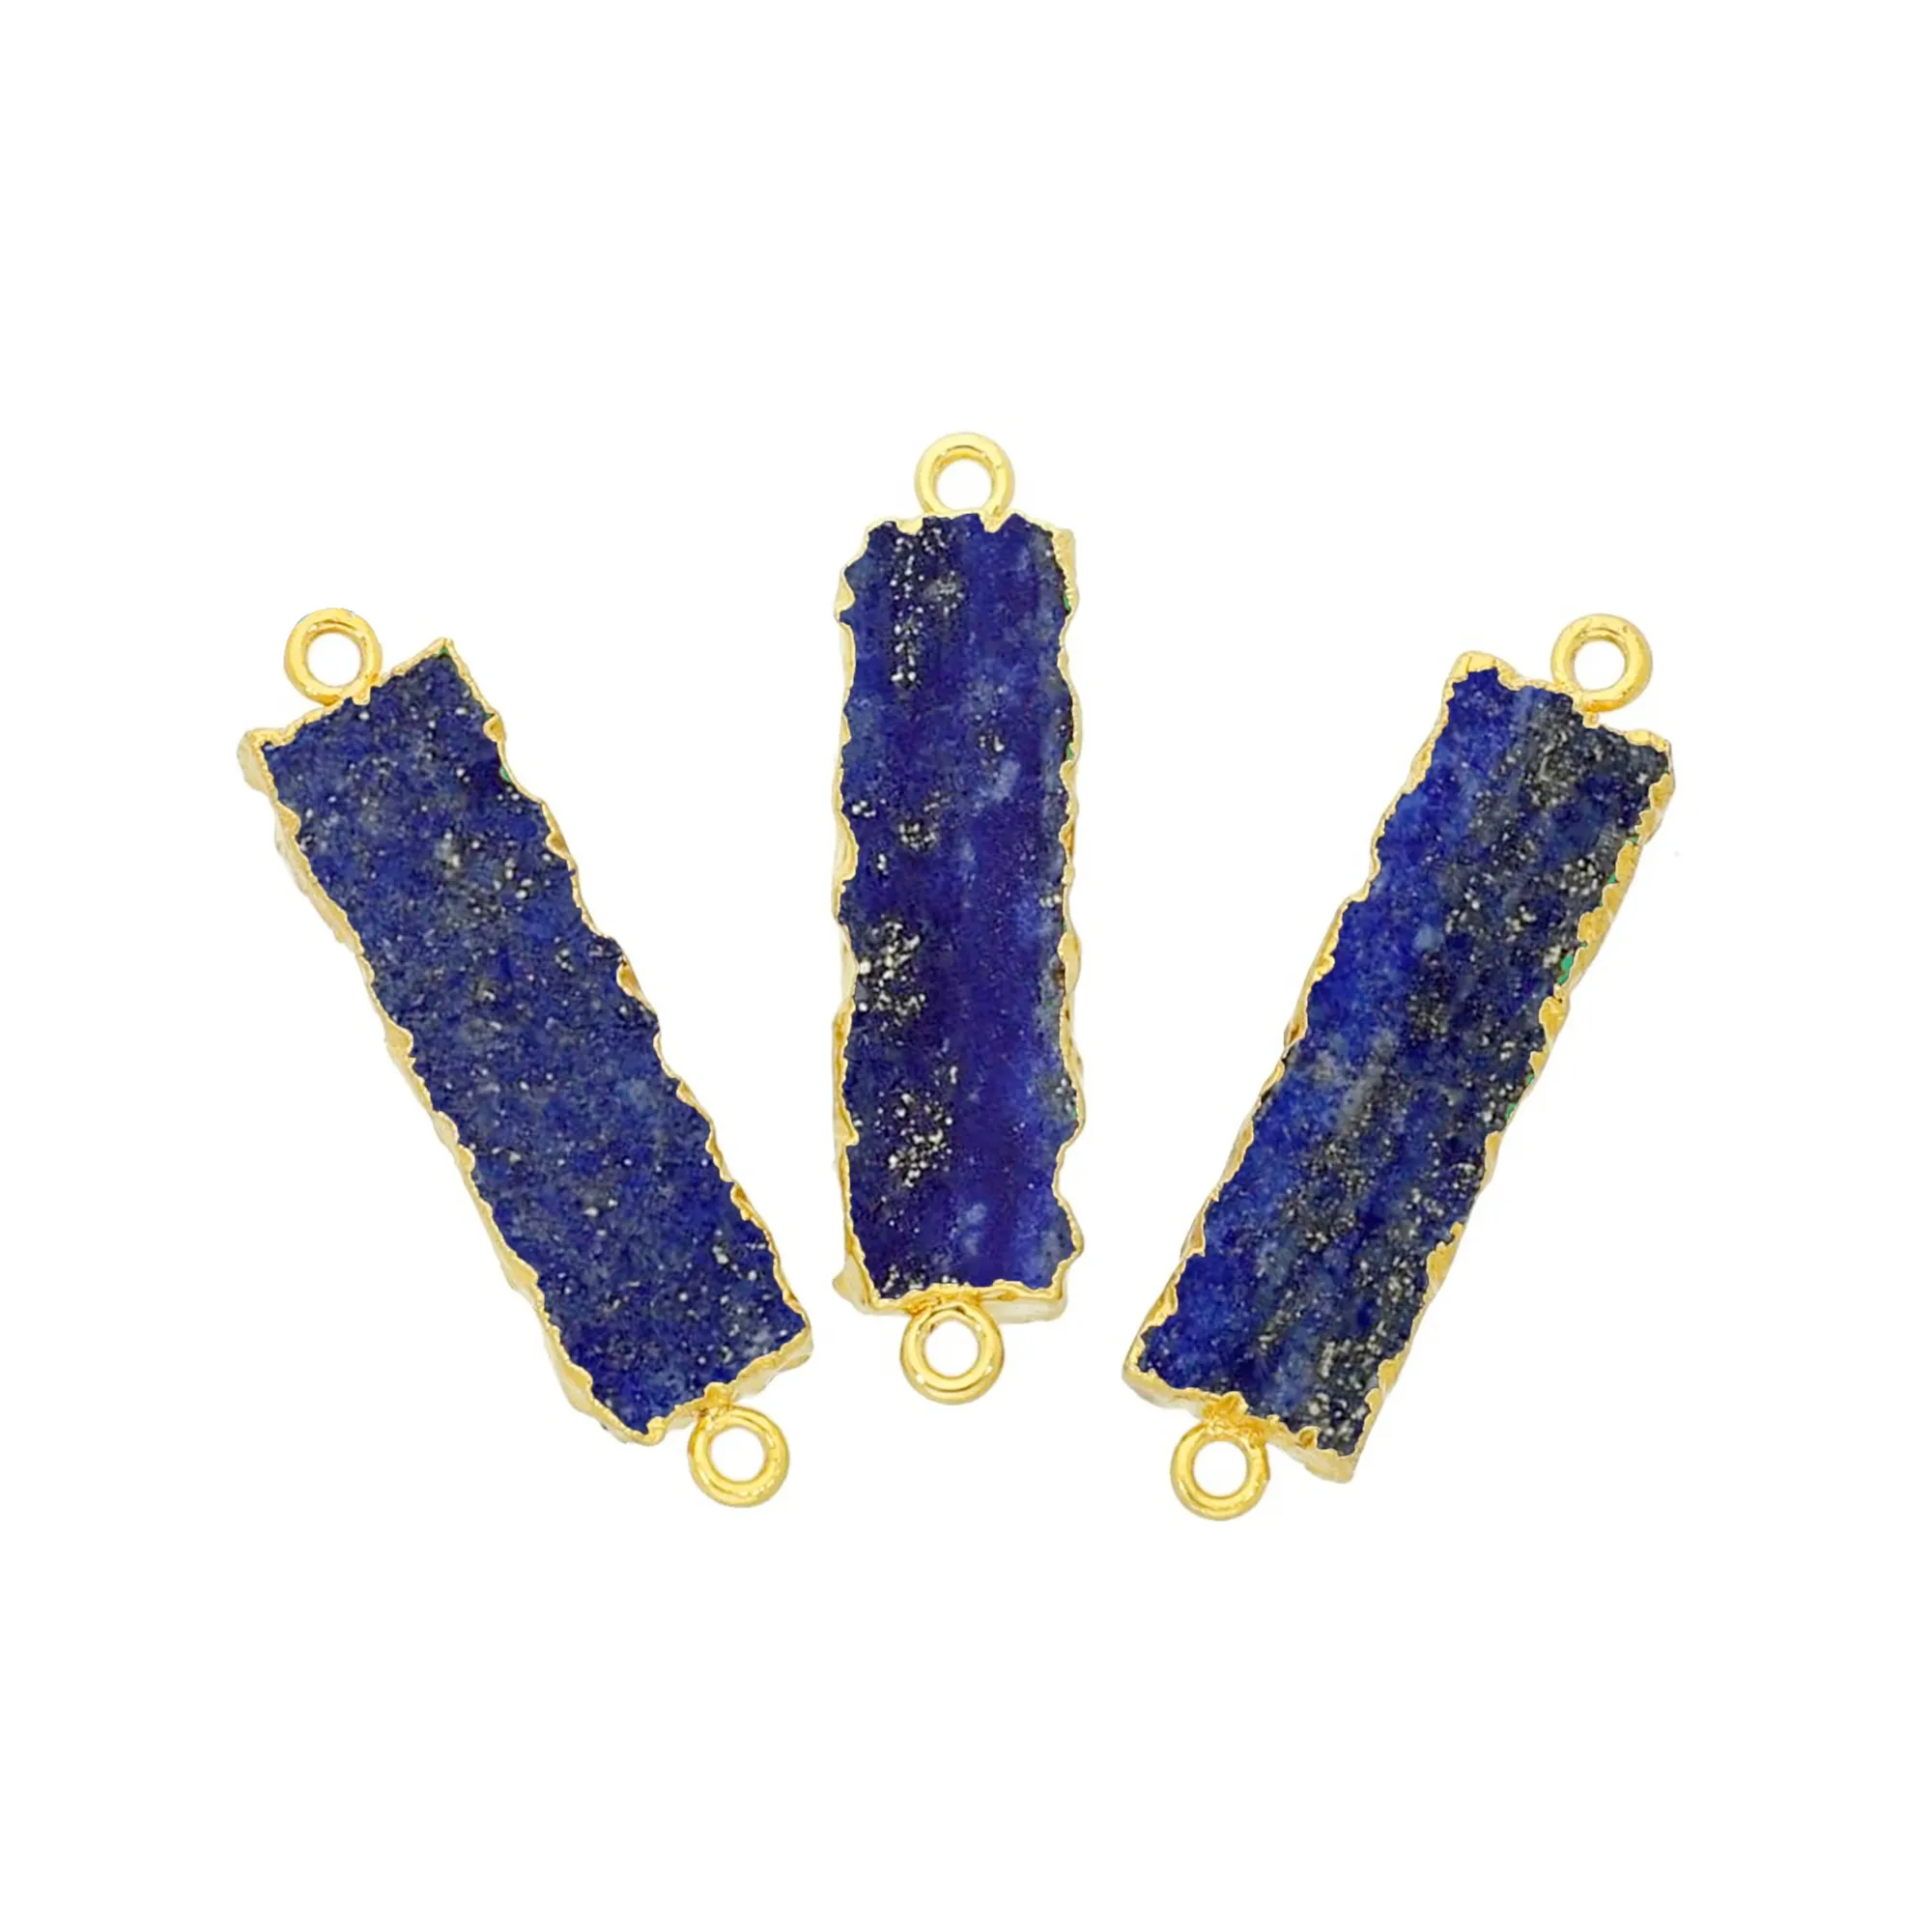 Lapis Lazuli dikdörtgen taş bağlayıcı-altın kaplama 2 döngü bağlayıcı-takı yapımı bağlayıcı